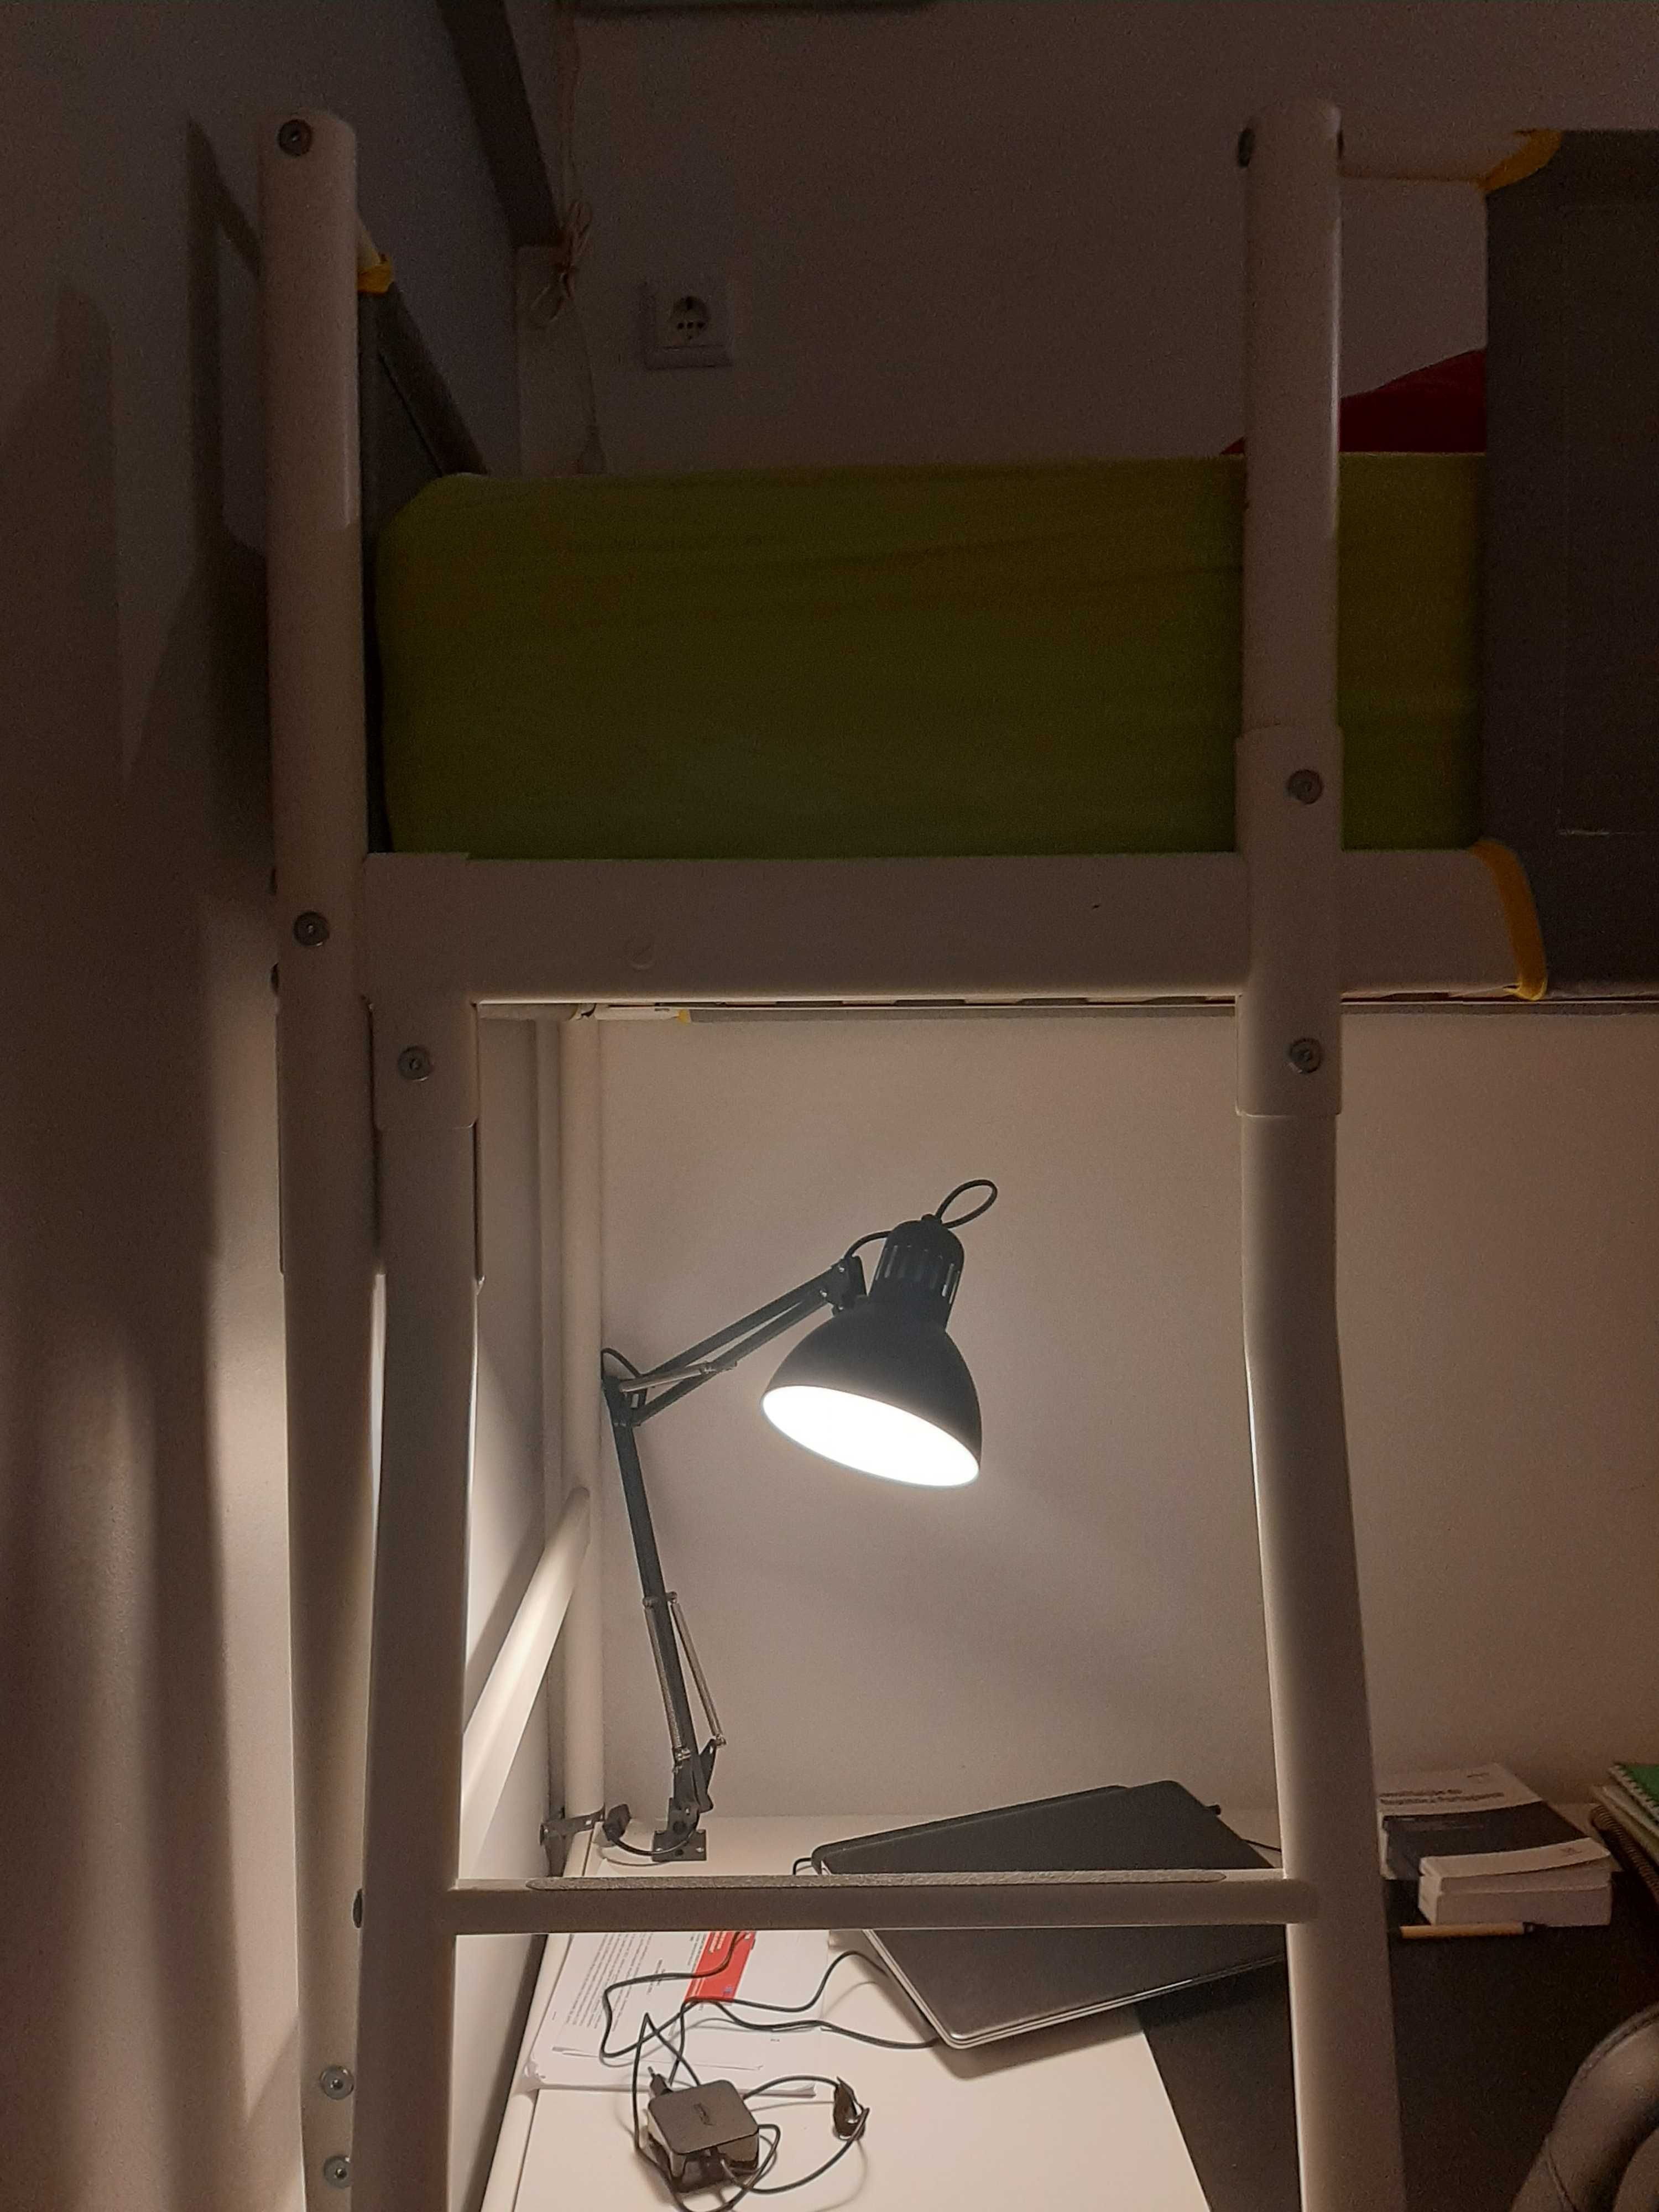 Camas Ikea Vitval